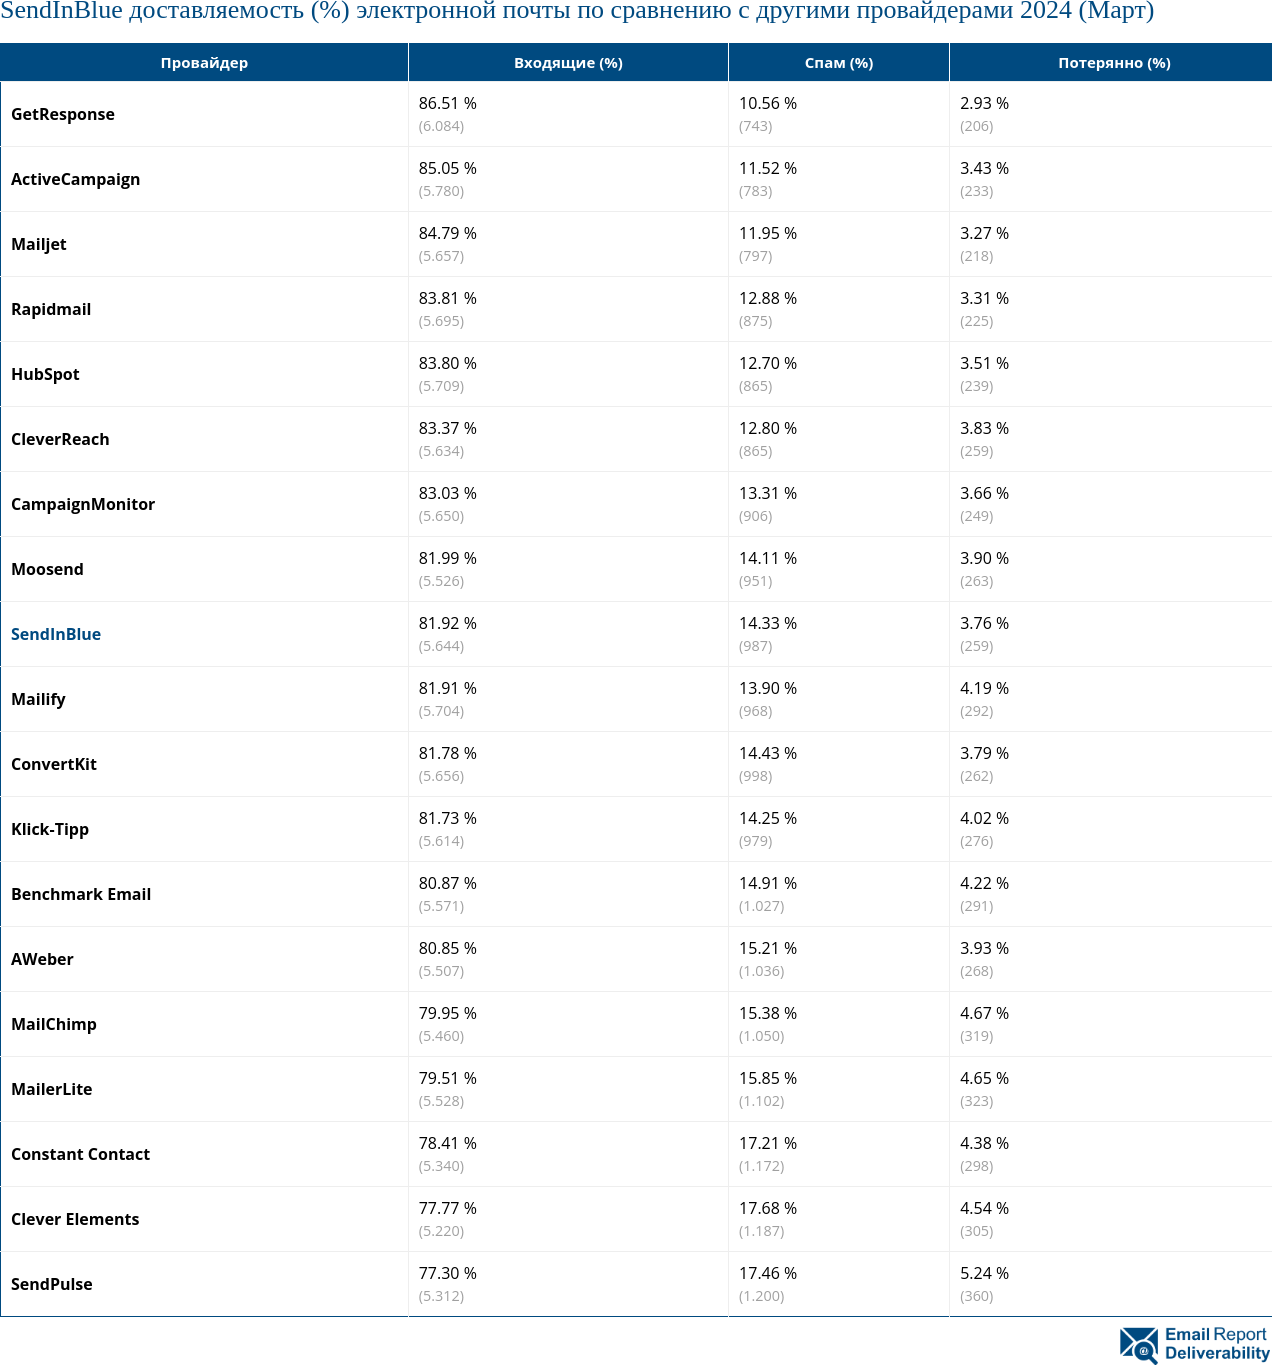 SendInBlue доставляемость (%) электронной почты по сравнению с другими провайдерами 2024 (Март)